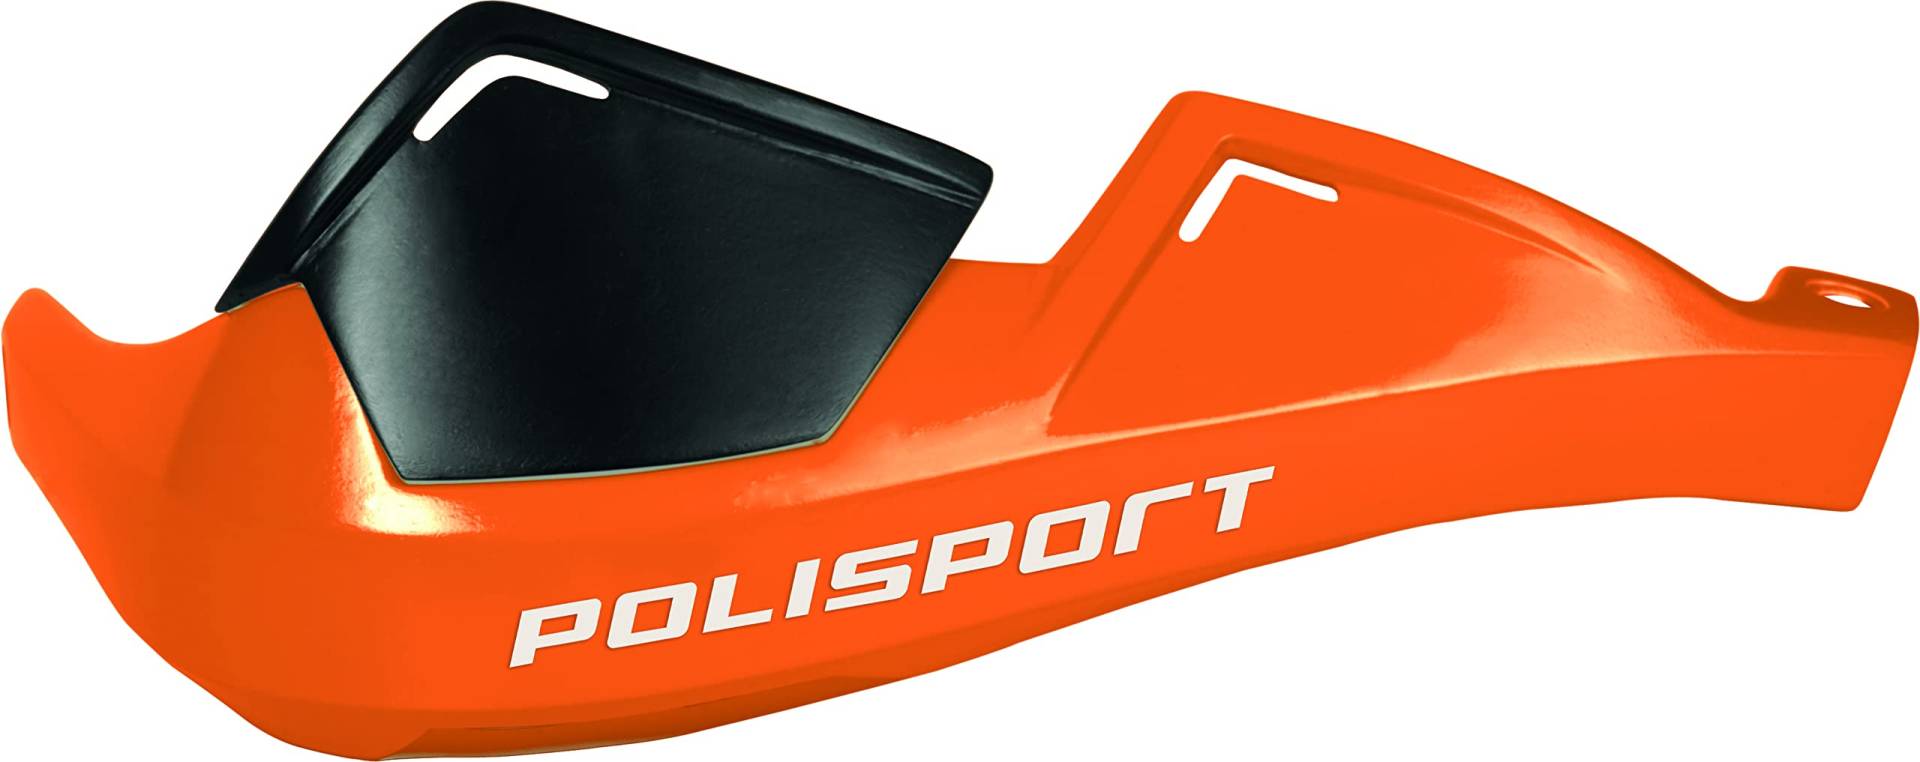 Polisport Handprotektoren Evolution Integral Orange - Rally und Trail von Polisport